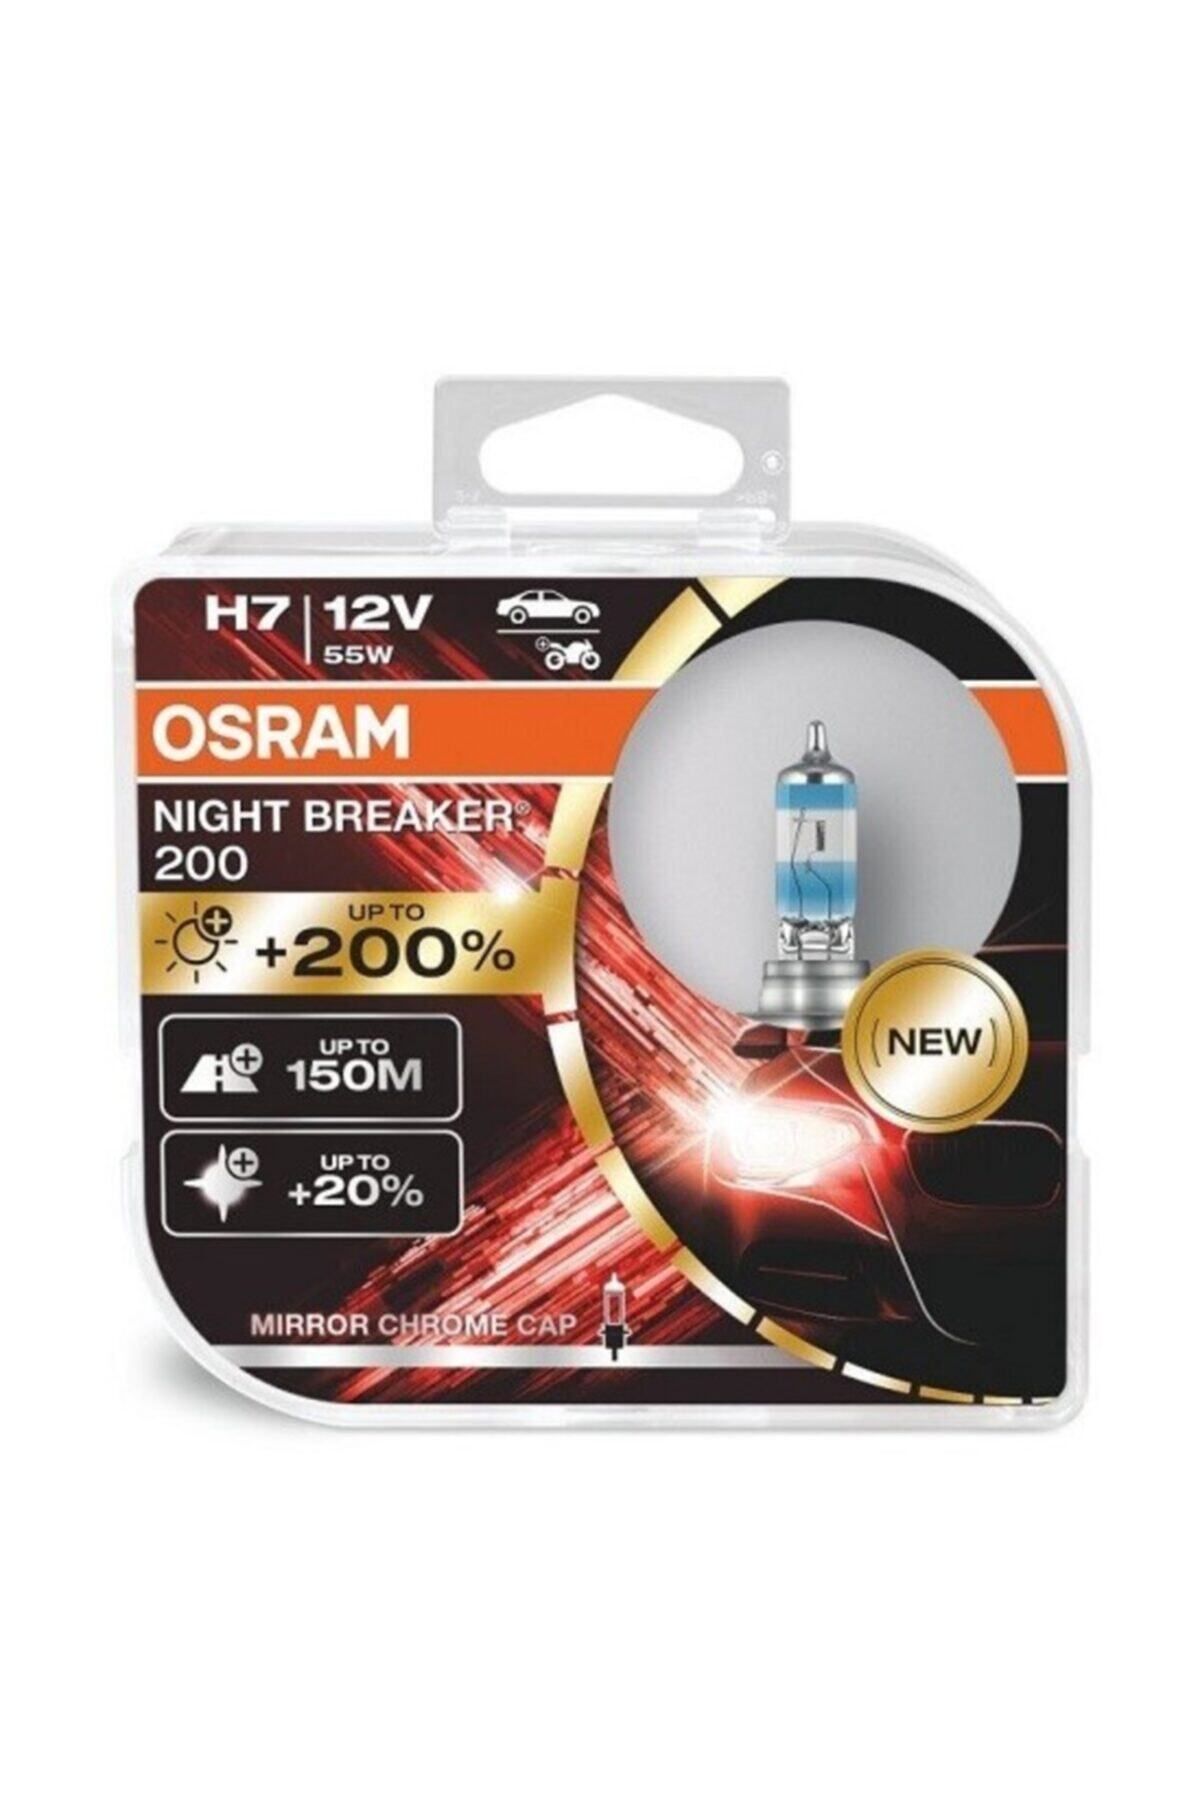 OSRAM 12V H7 AMPUL 55W +%200 FAZLA IŞIK NIGHT BREAKER (2 AD